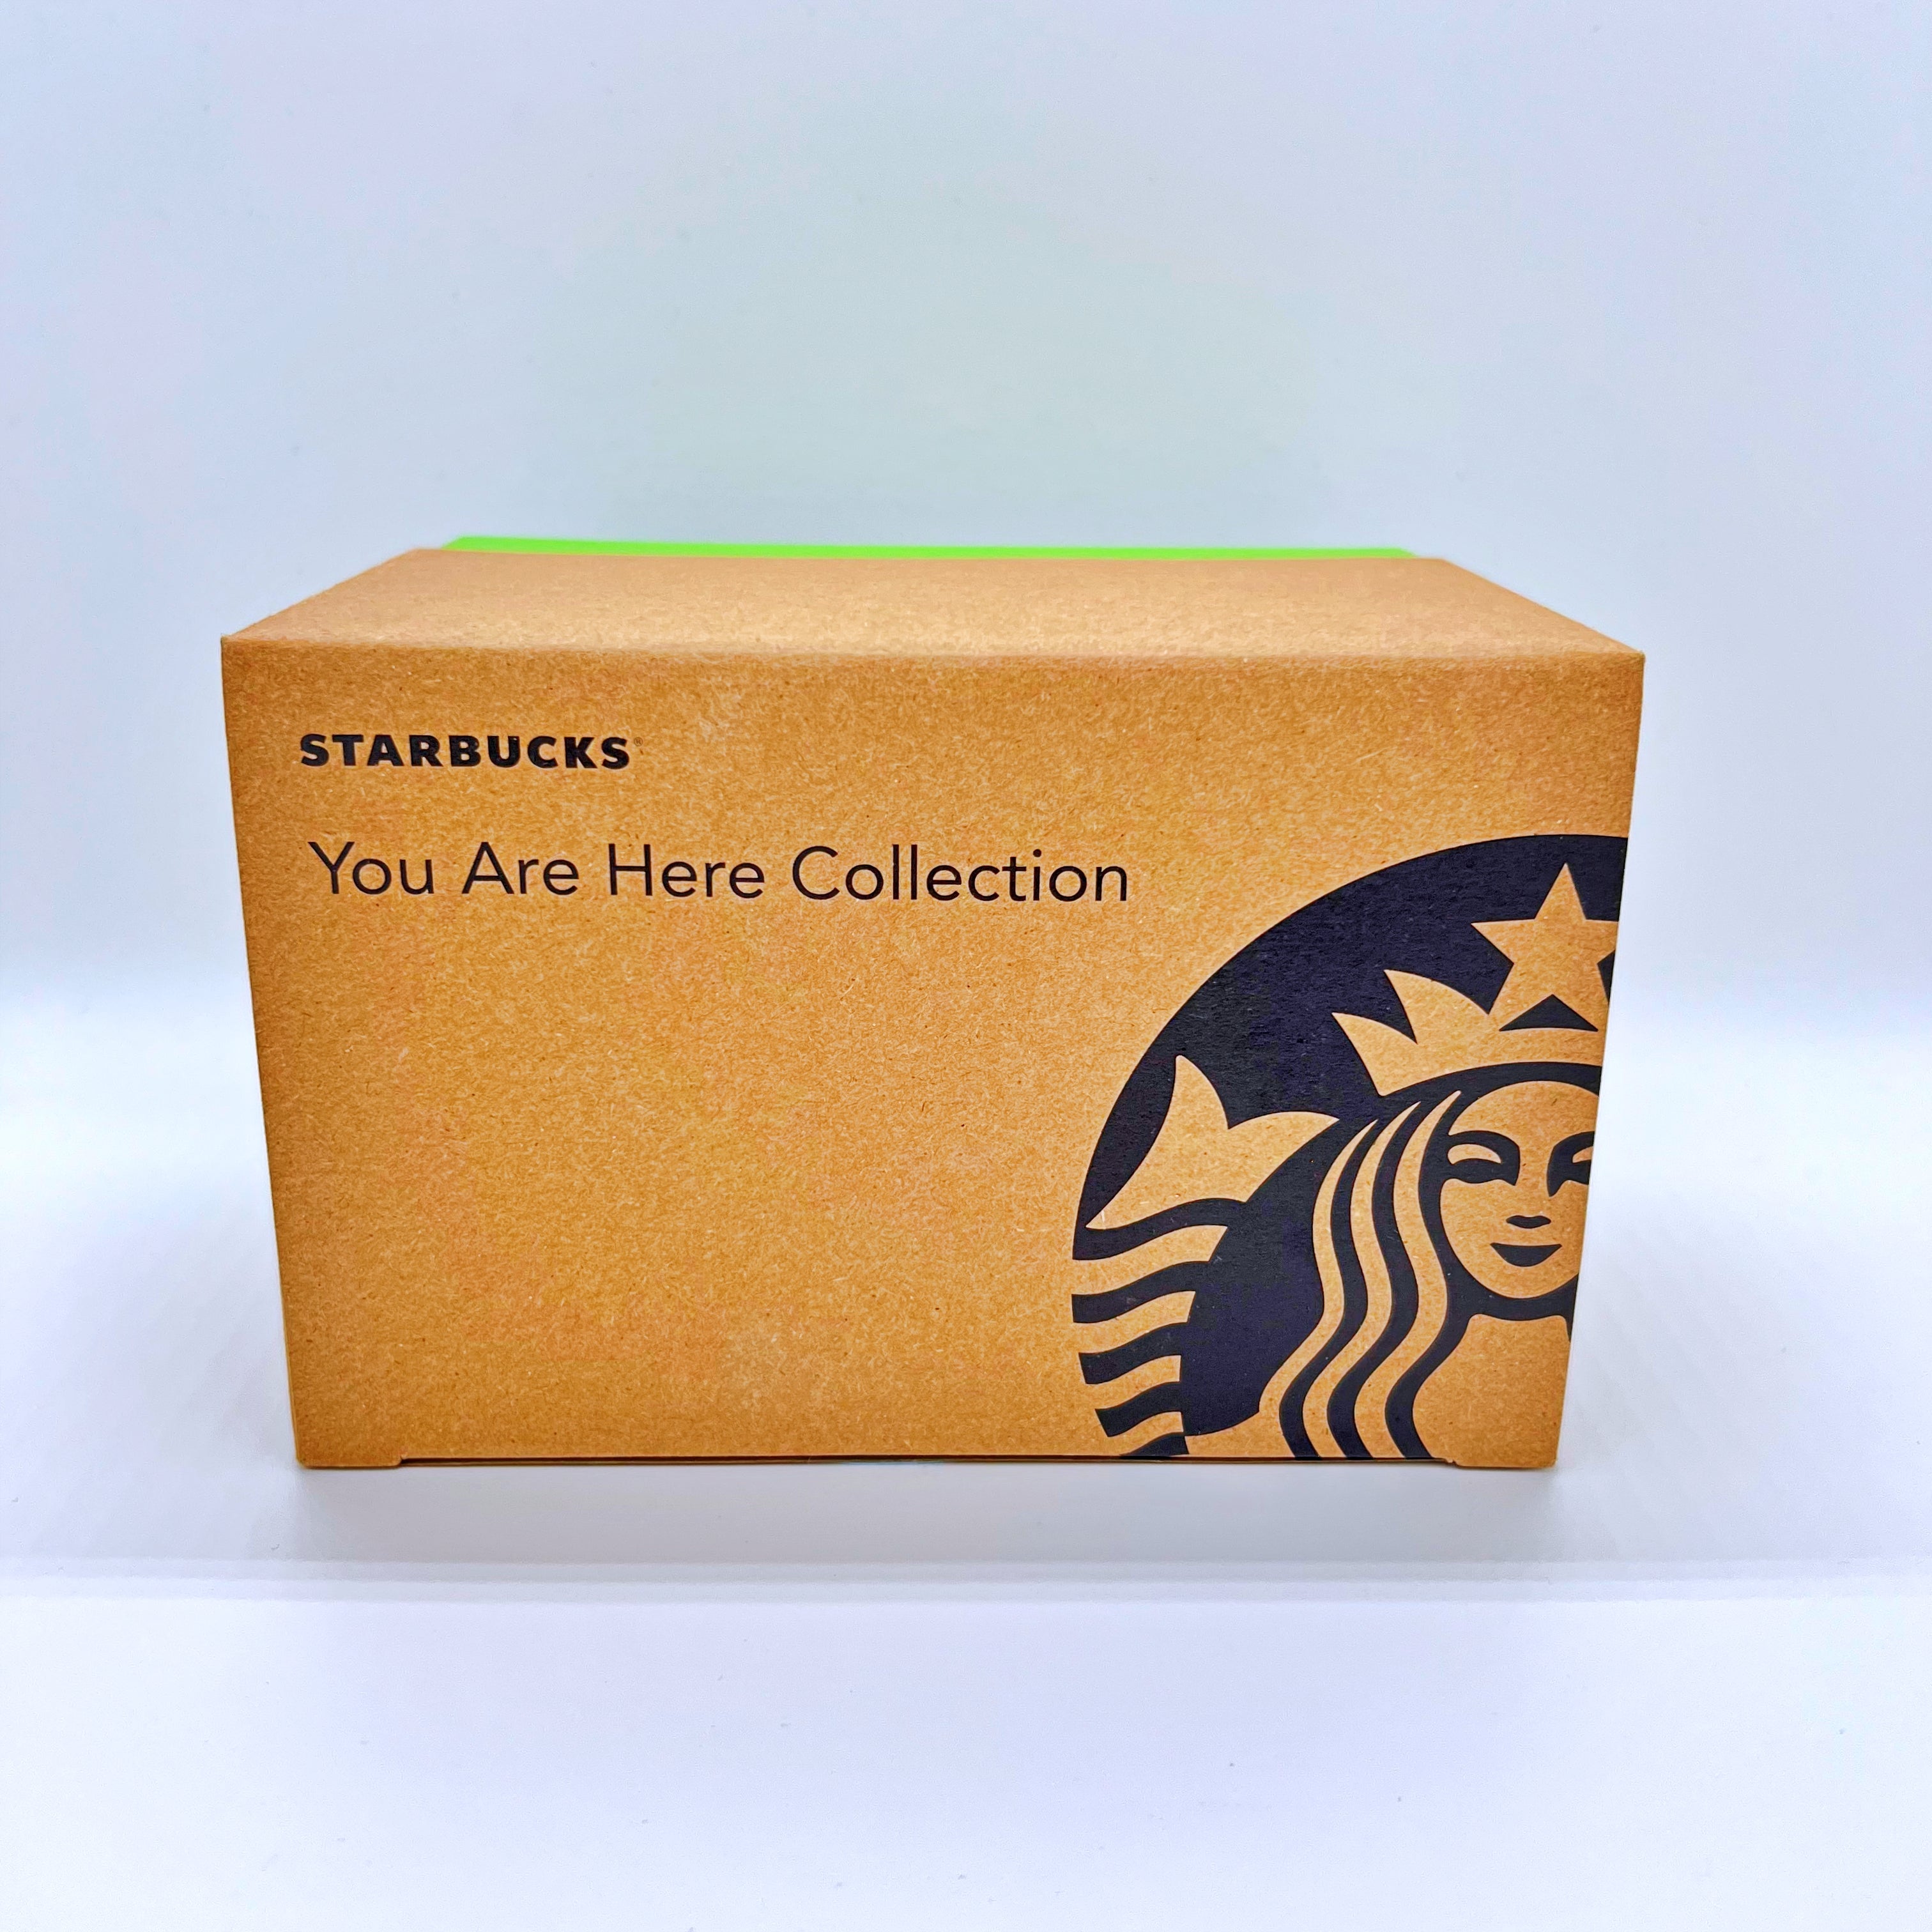 You Are Here – Metz – Starbucks Mugs